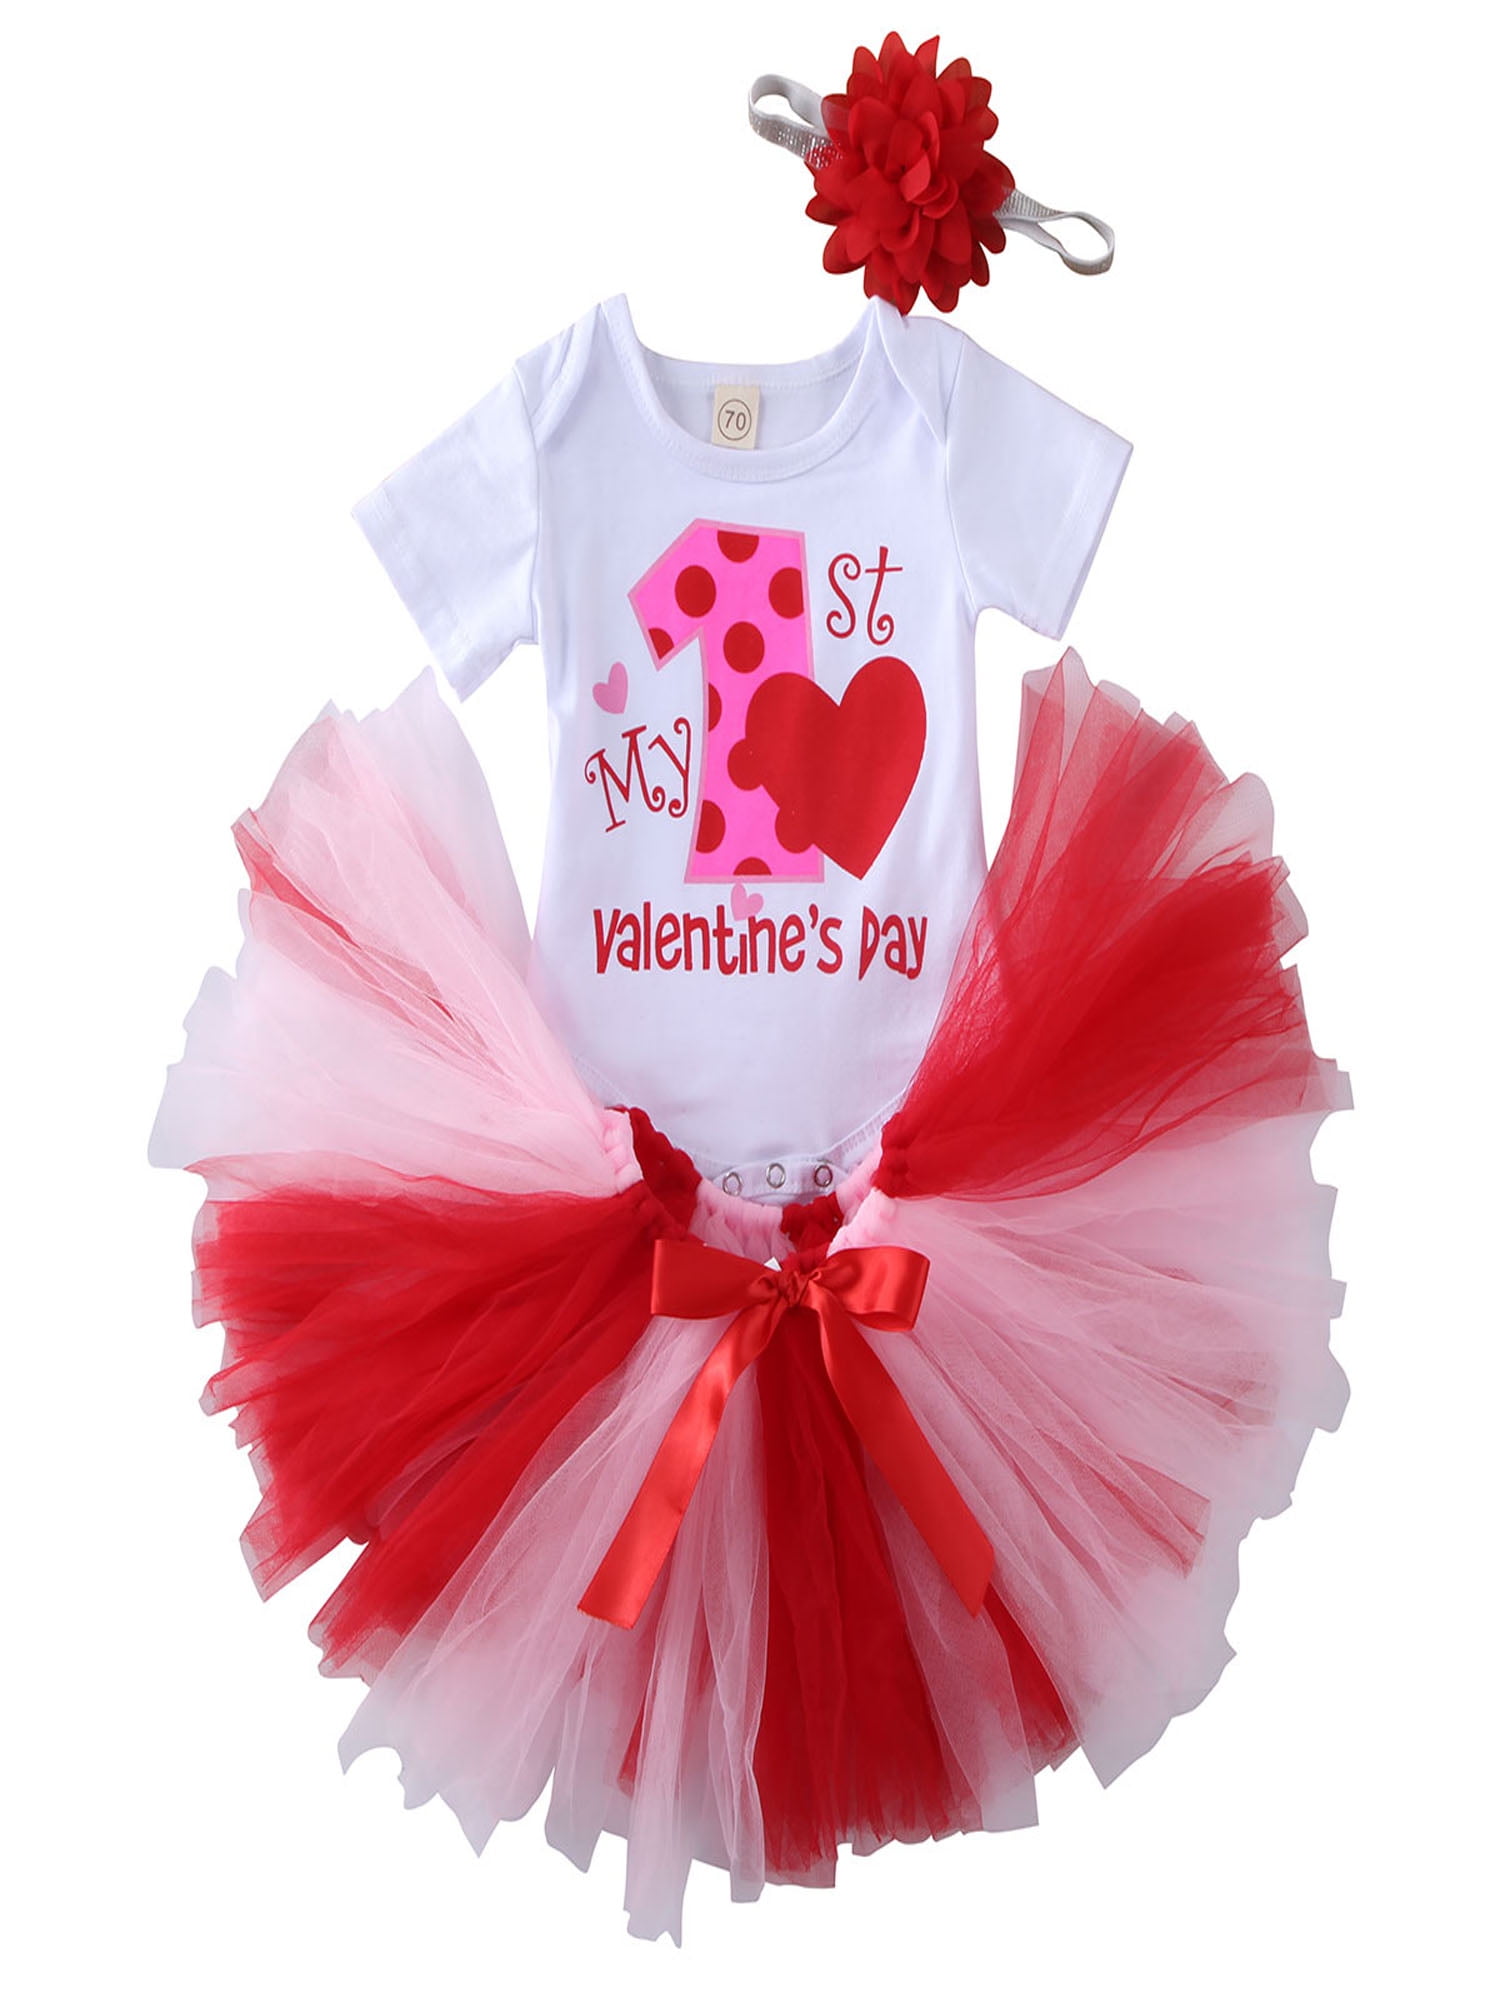 Red Sparkle 1ST Birthday Bodysuit Hot Red Pettiskirt Girl Baby Dress NB-18Month 